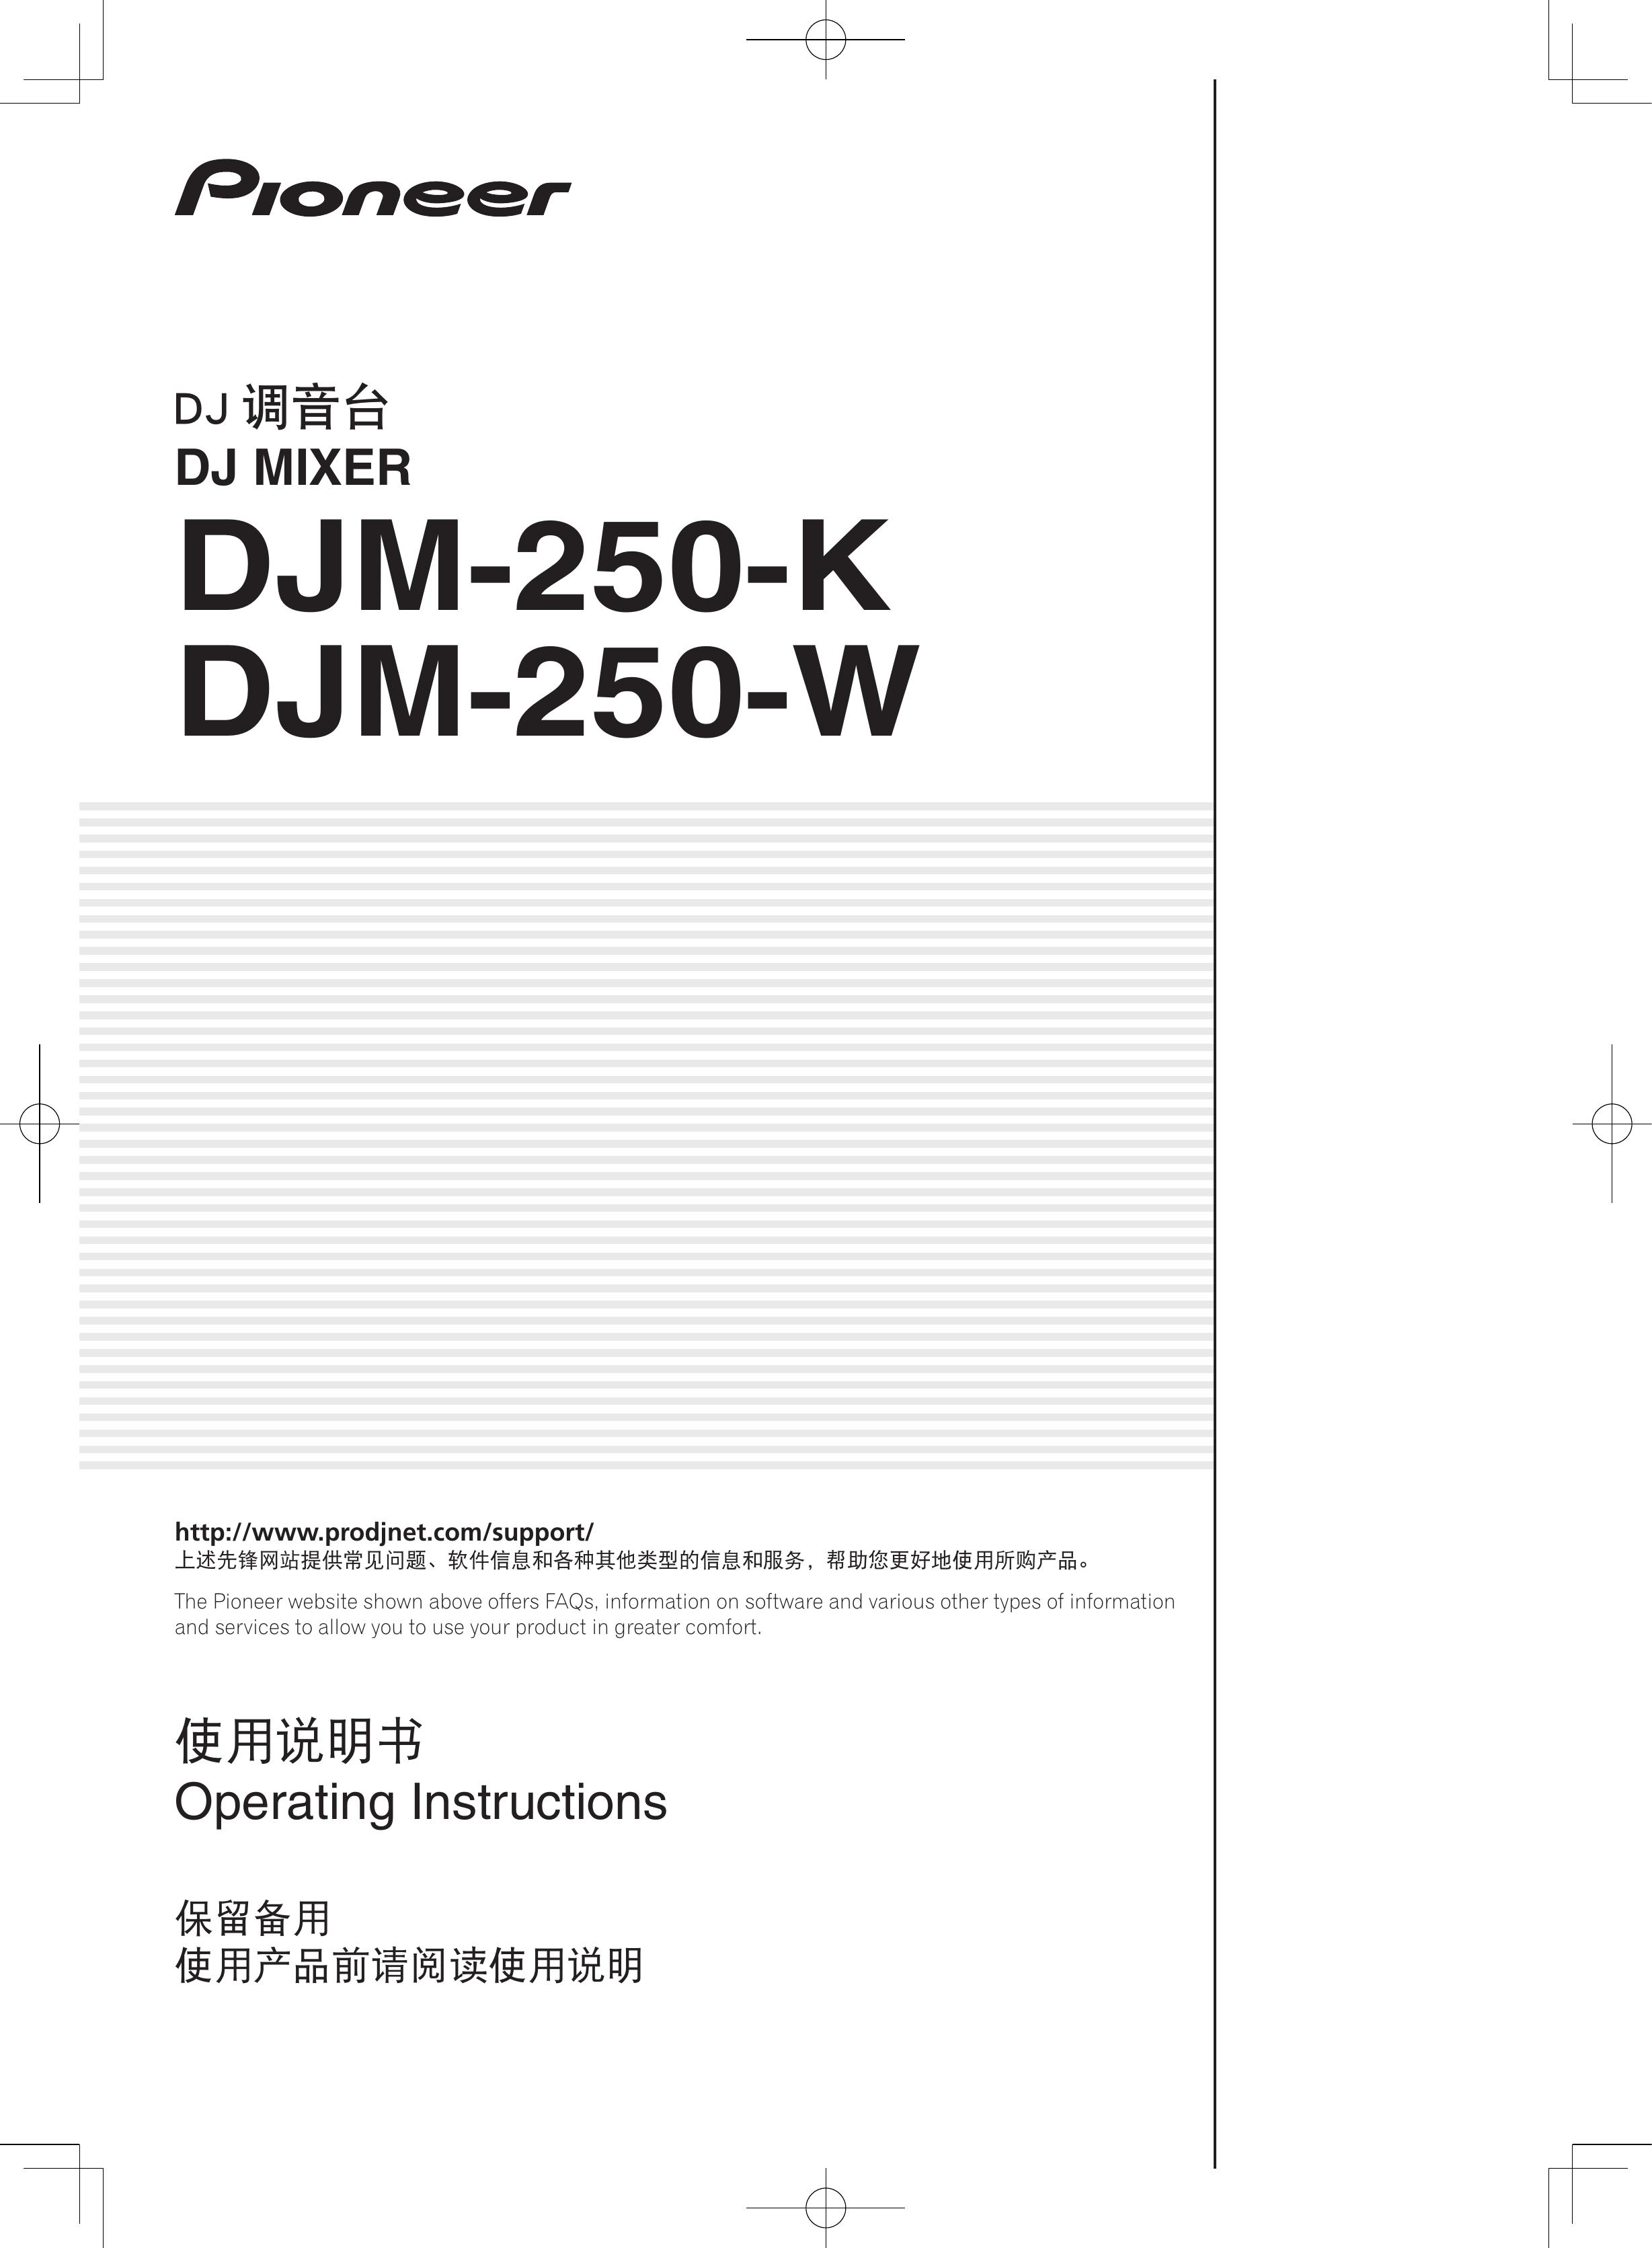 Pioneer DJM-250-W Music Mixer User Manual